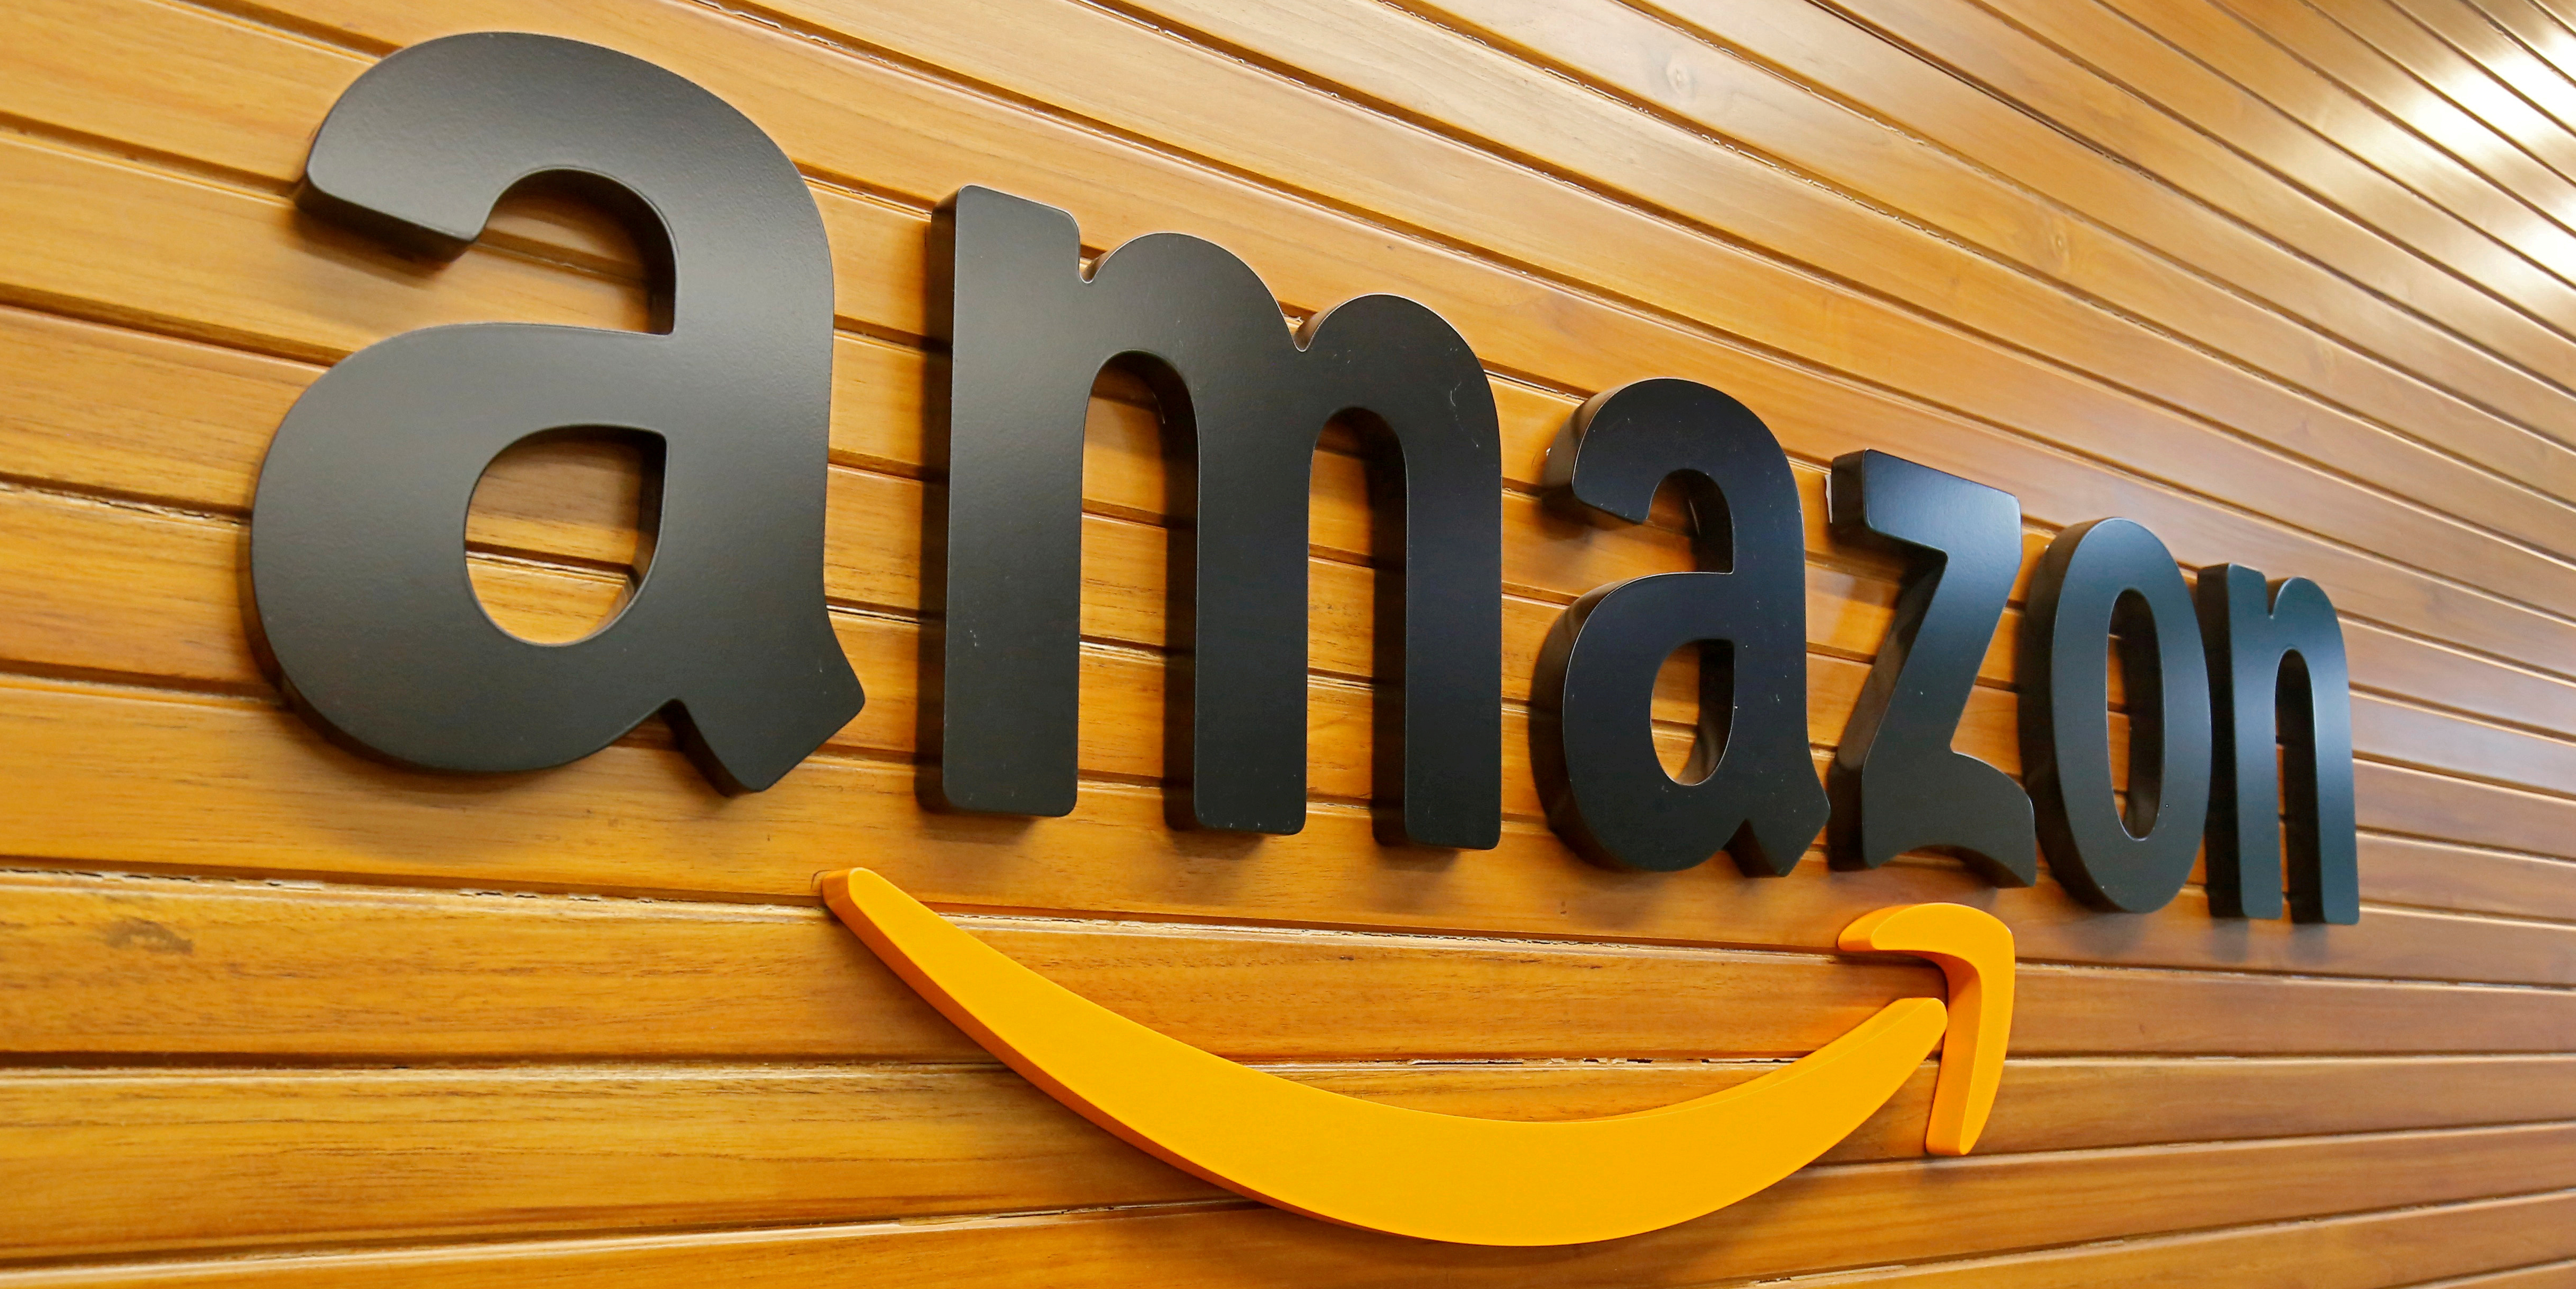 Comment Amazon France veut appâter les TPE/PME grâce à la formation